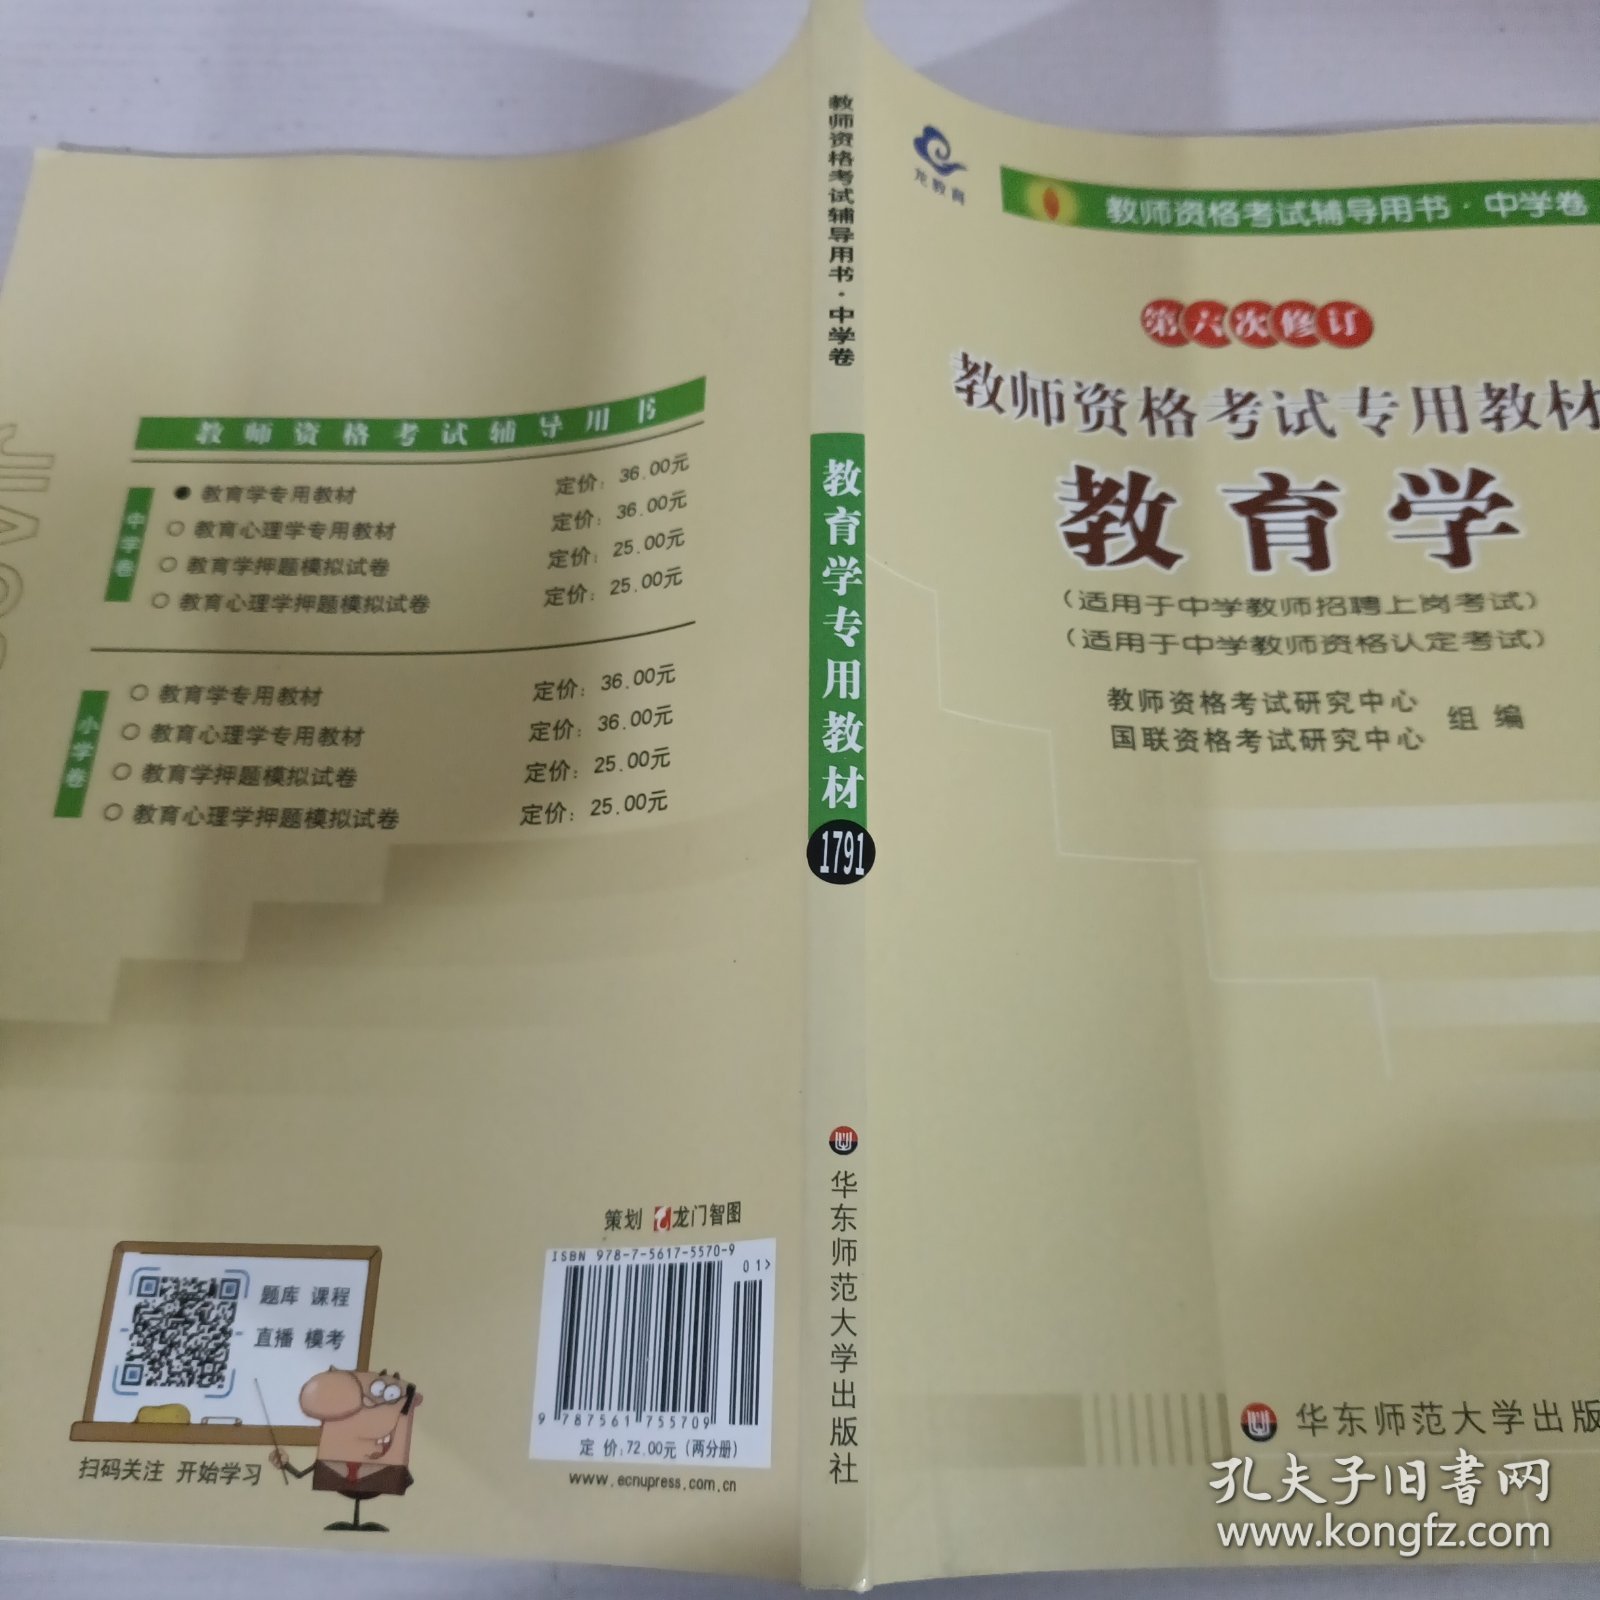 2012-2013江西省教师资格考试专业教材 教育学